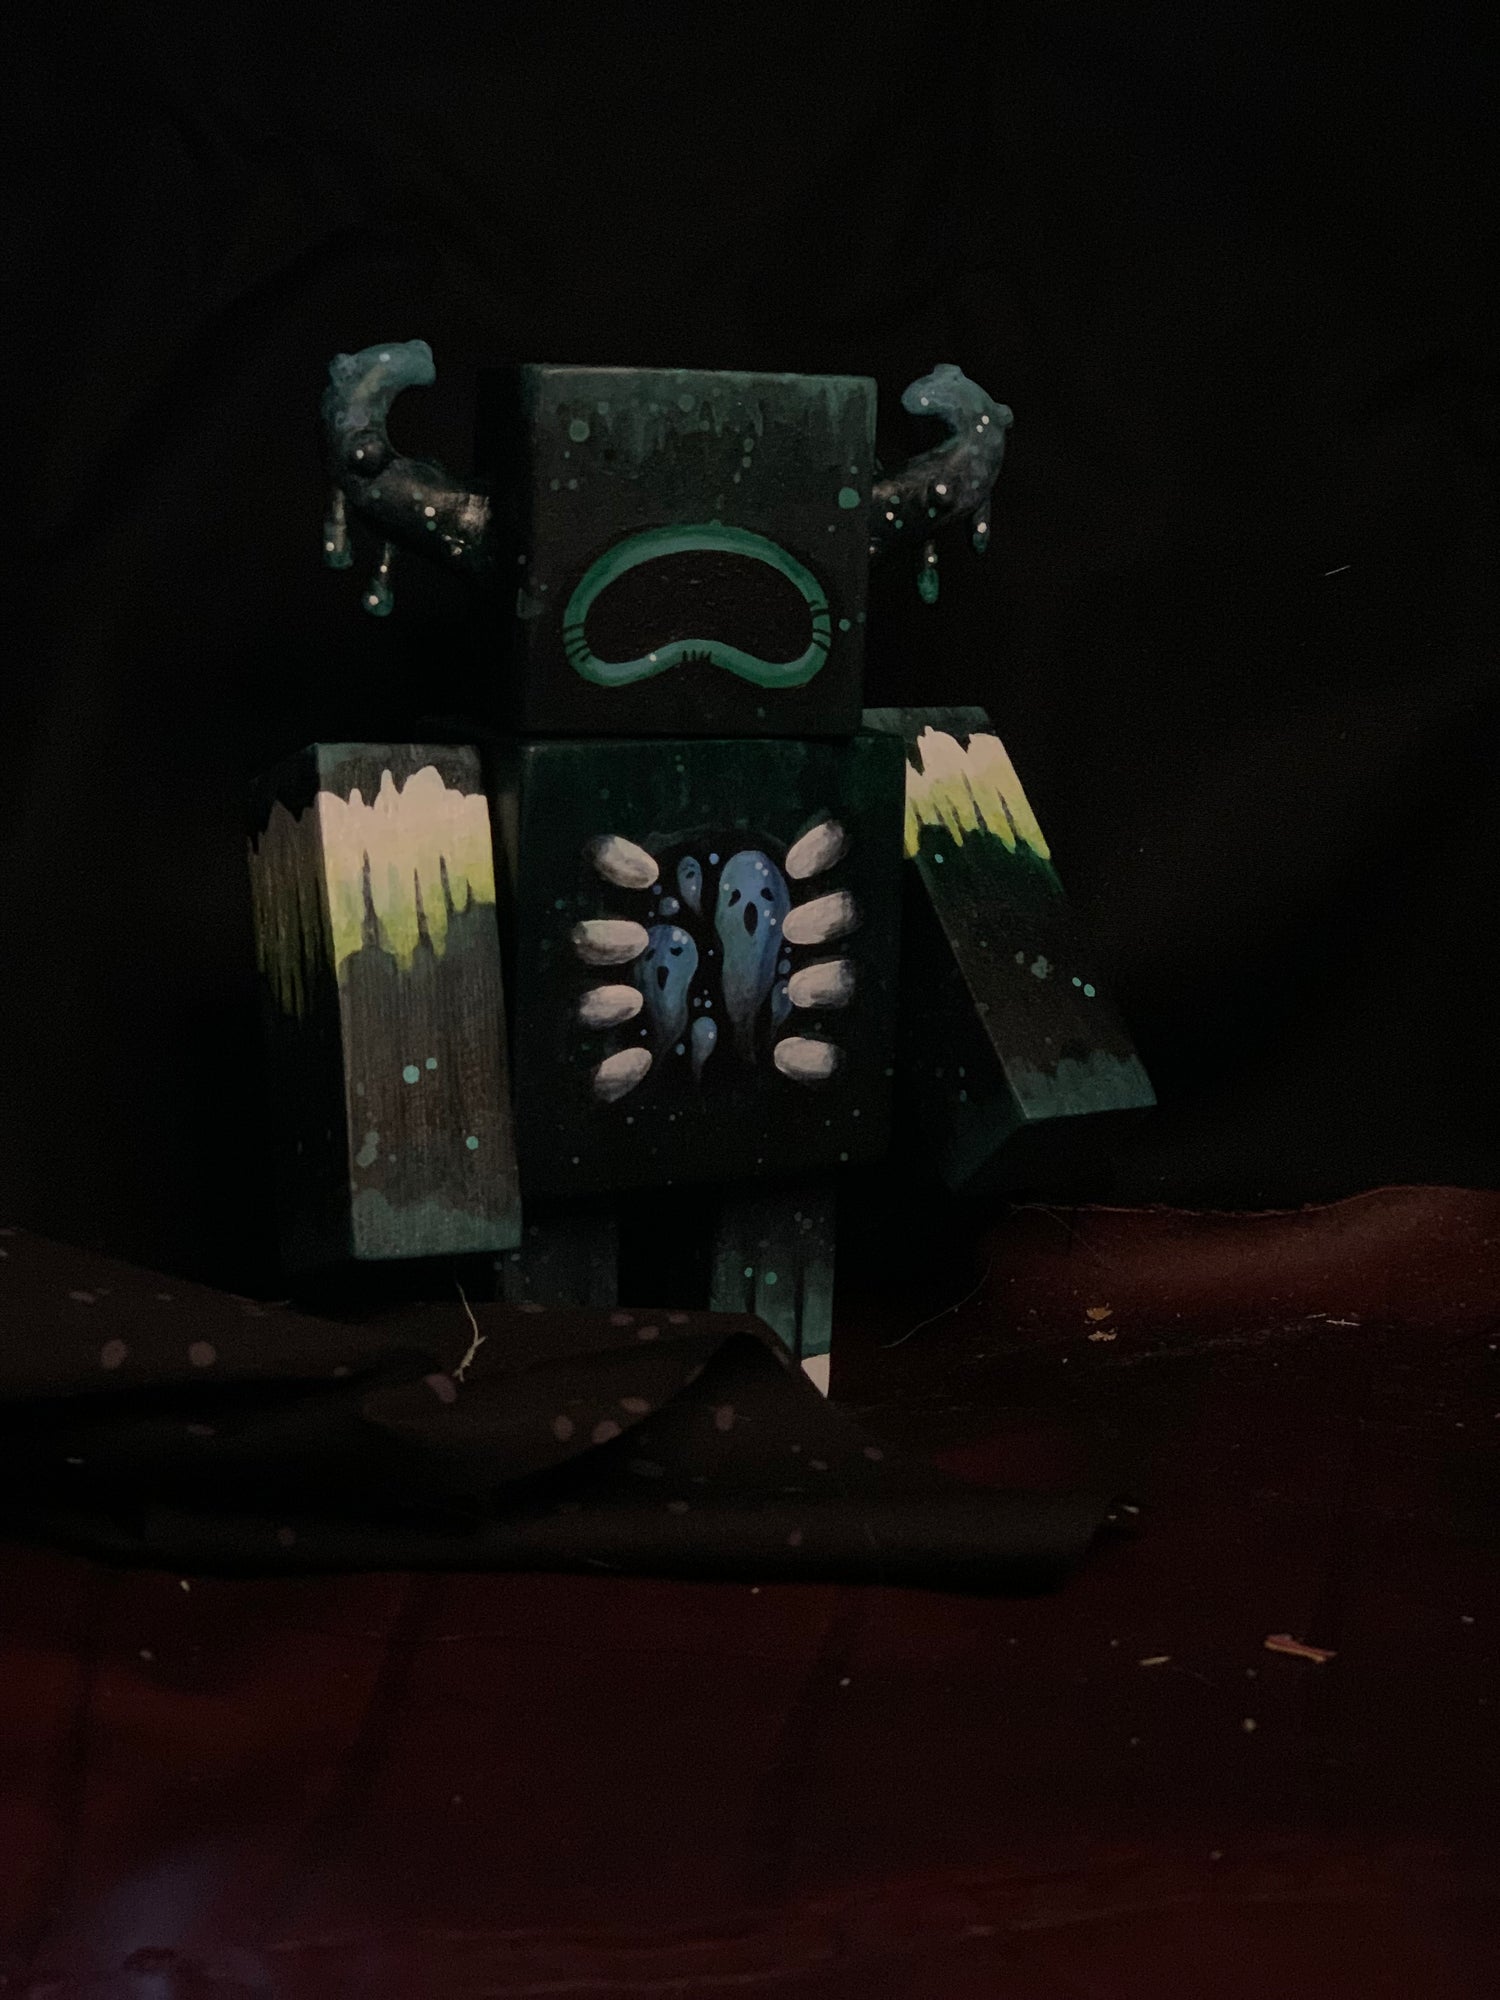 Warden Statue : r/Minecraft